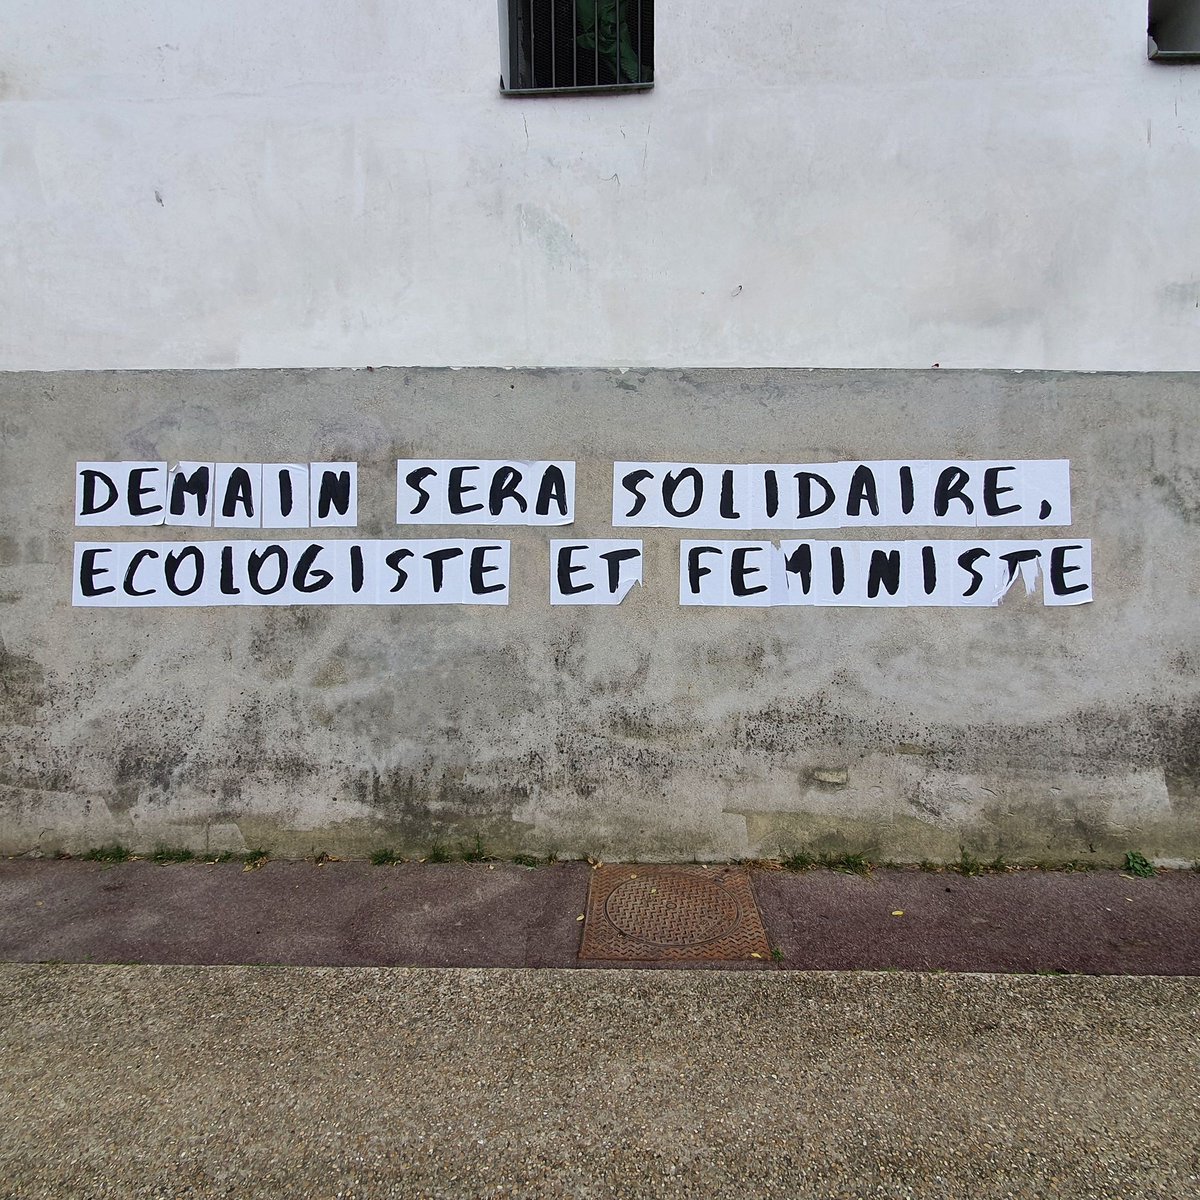 Sur les murs. Demain sera solidaire, écologiste et féministe.